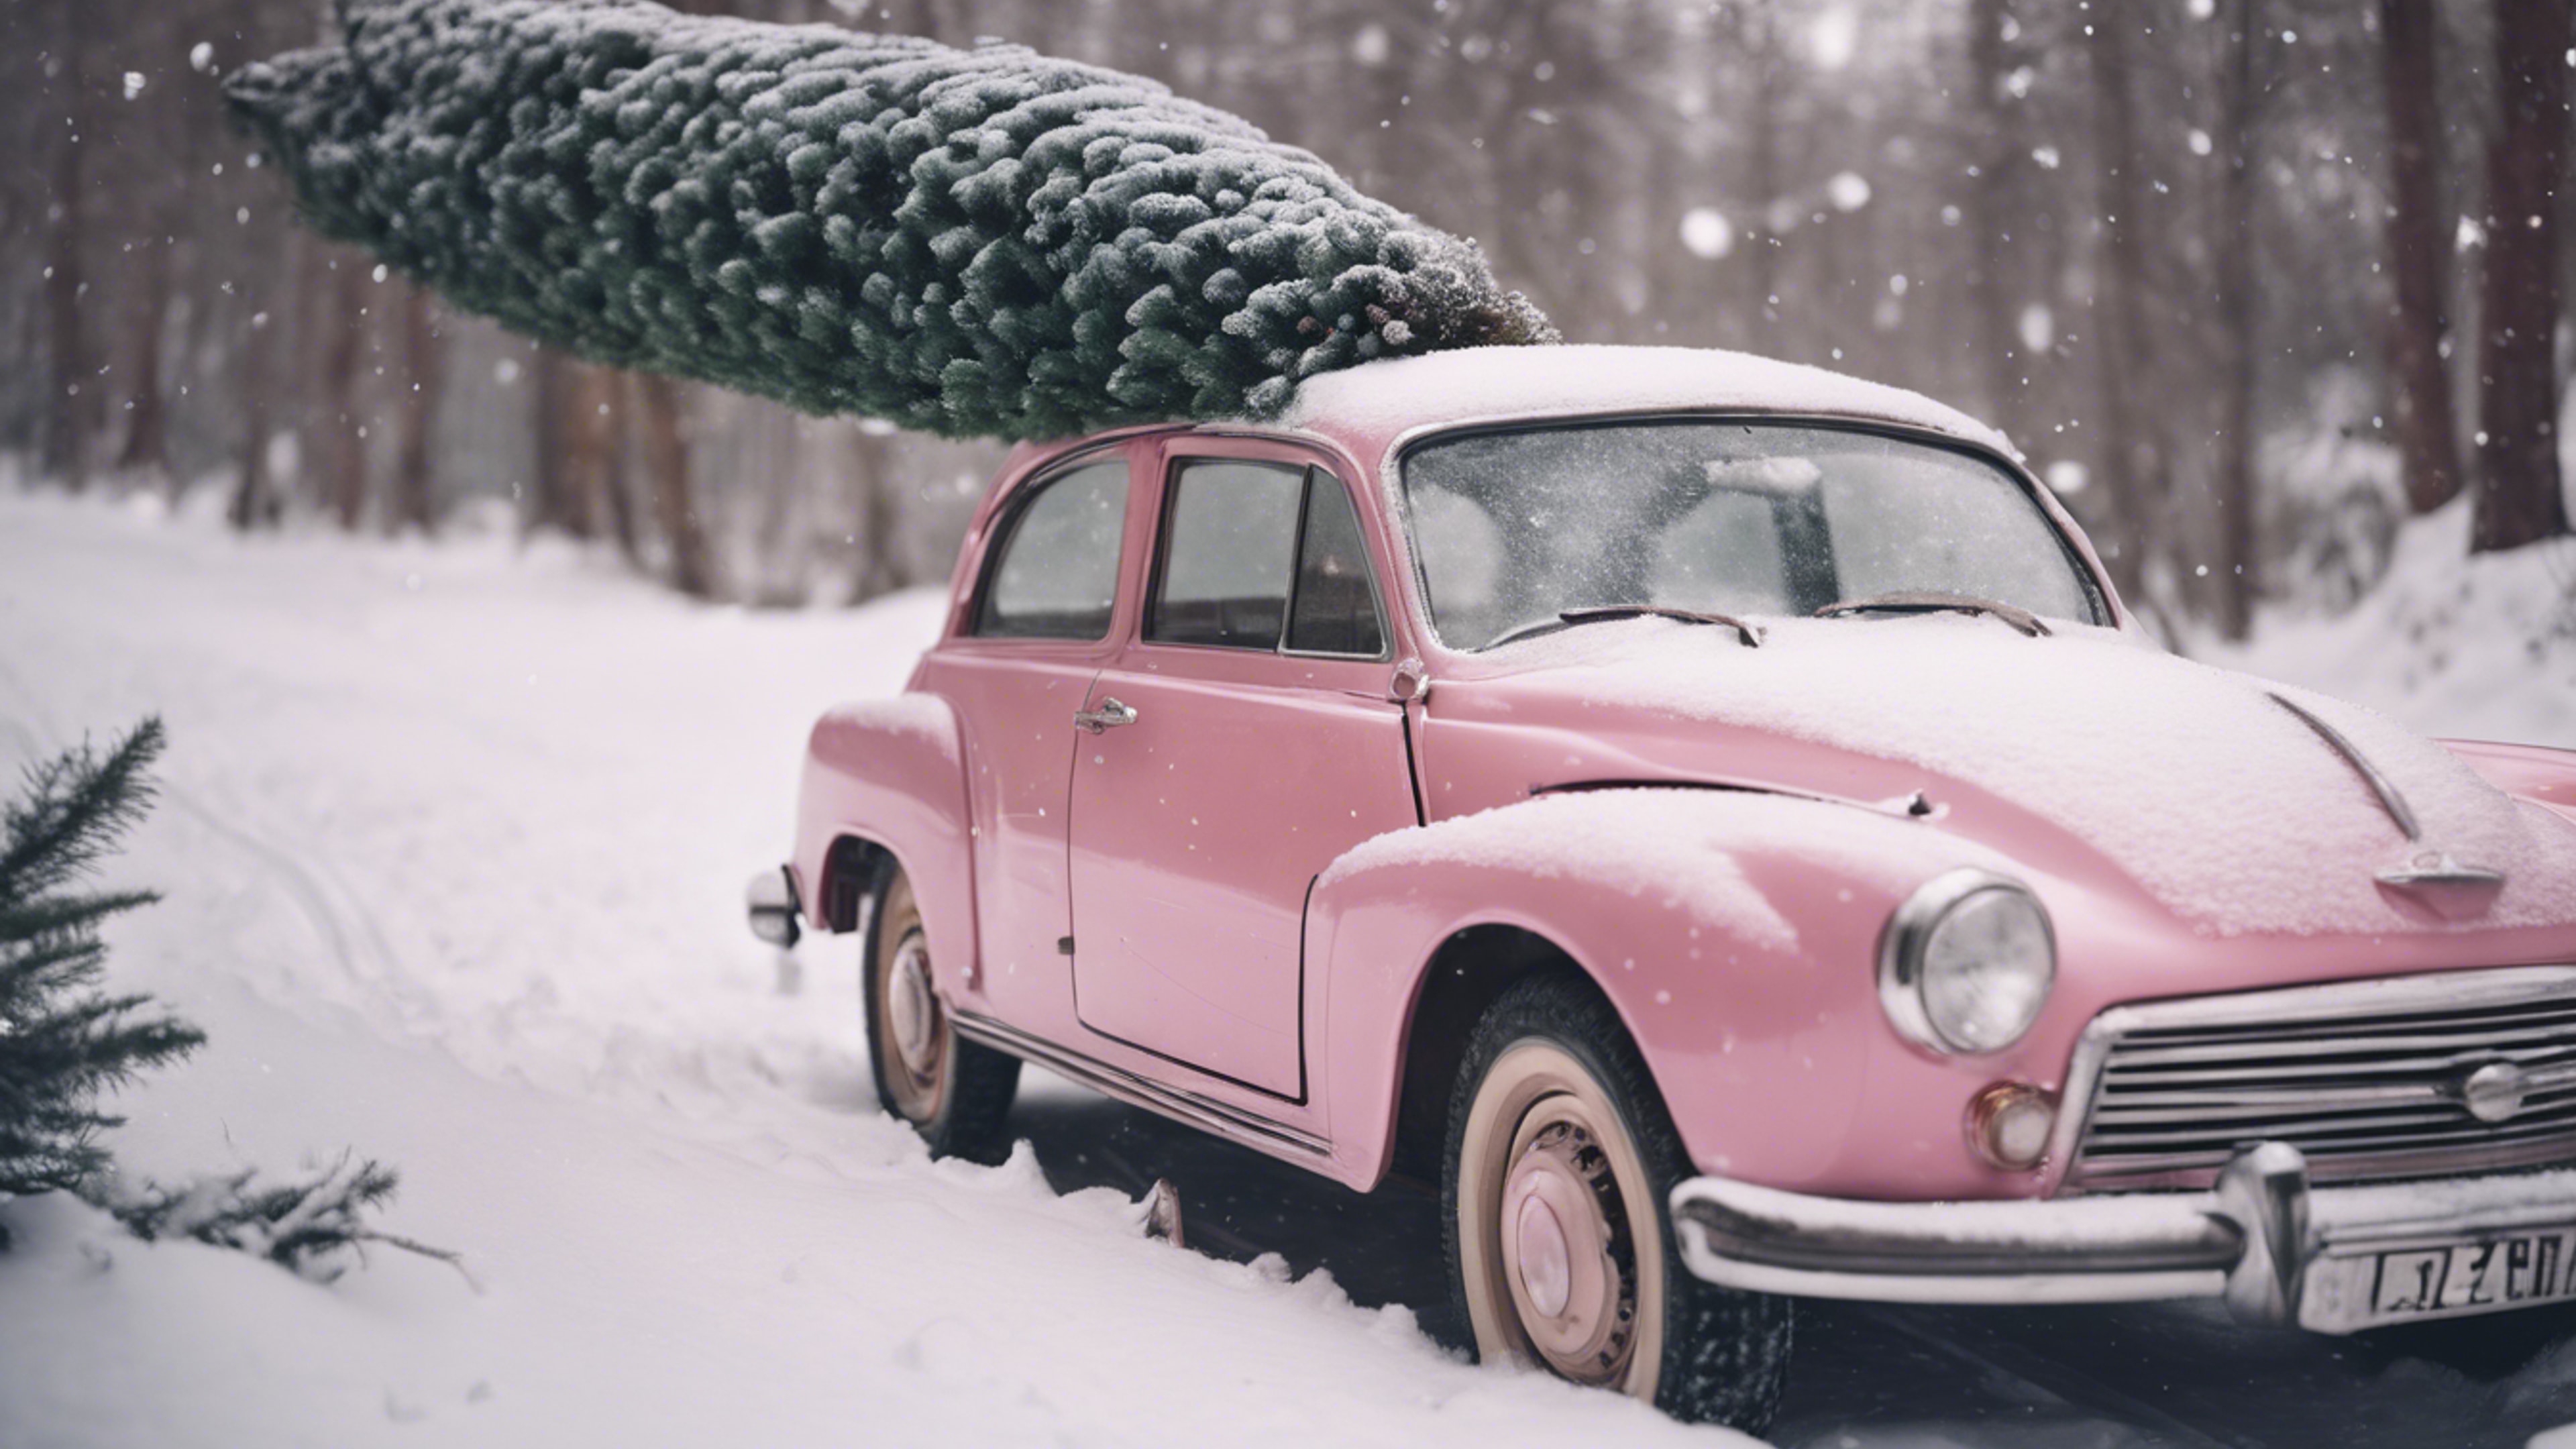 A retro pink car carrying a freshly cut Christmas tree on snowy roads. Hintergrund[b34e85bc5da446a1b888]